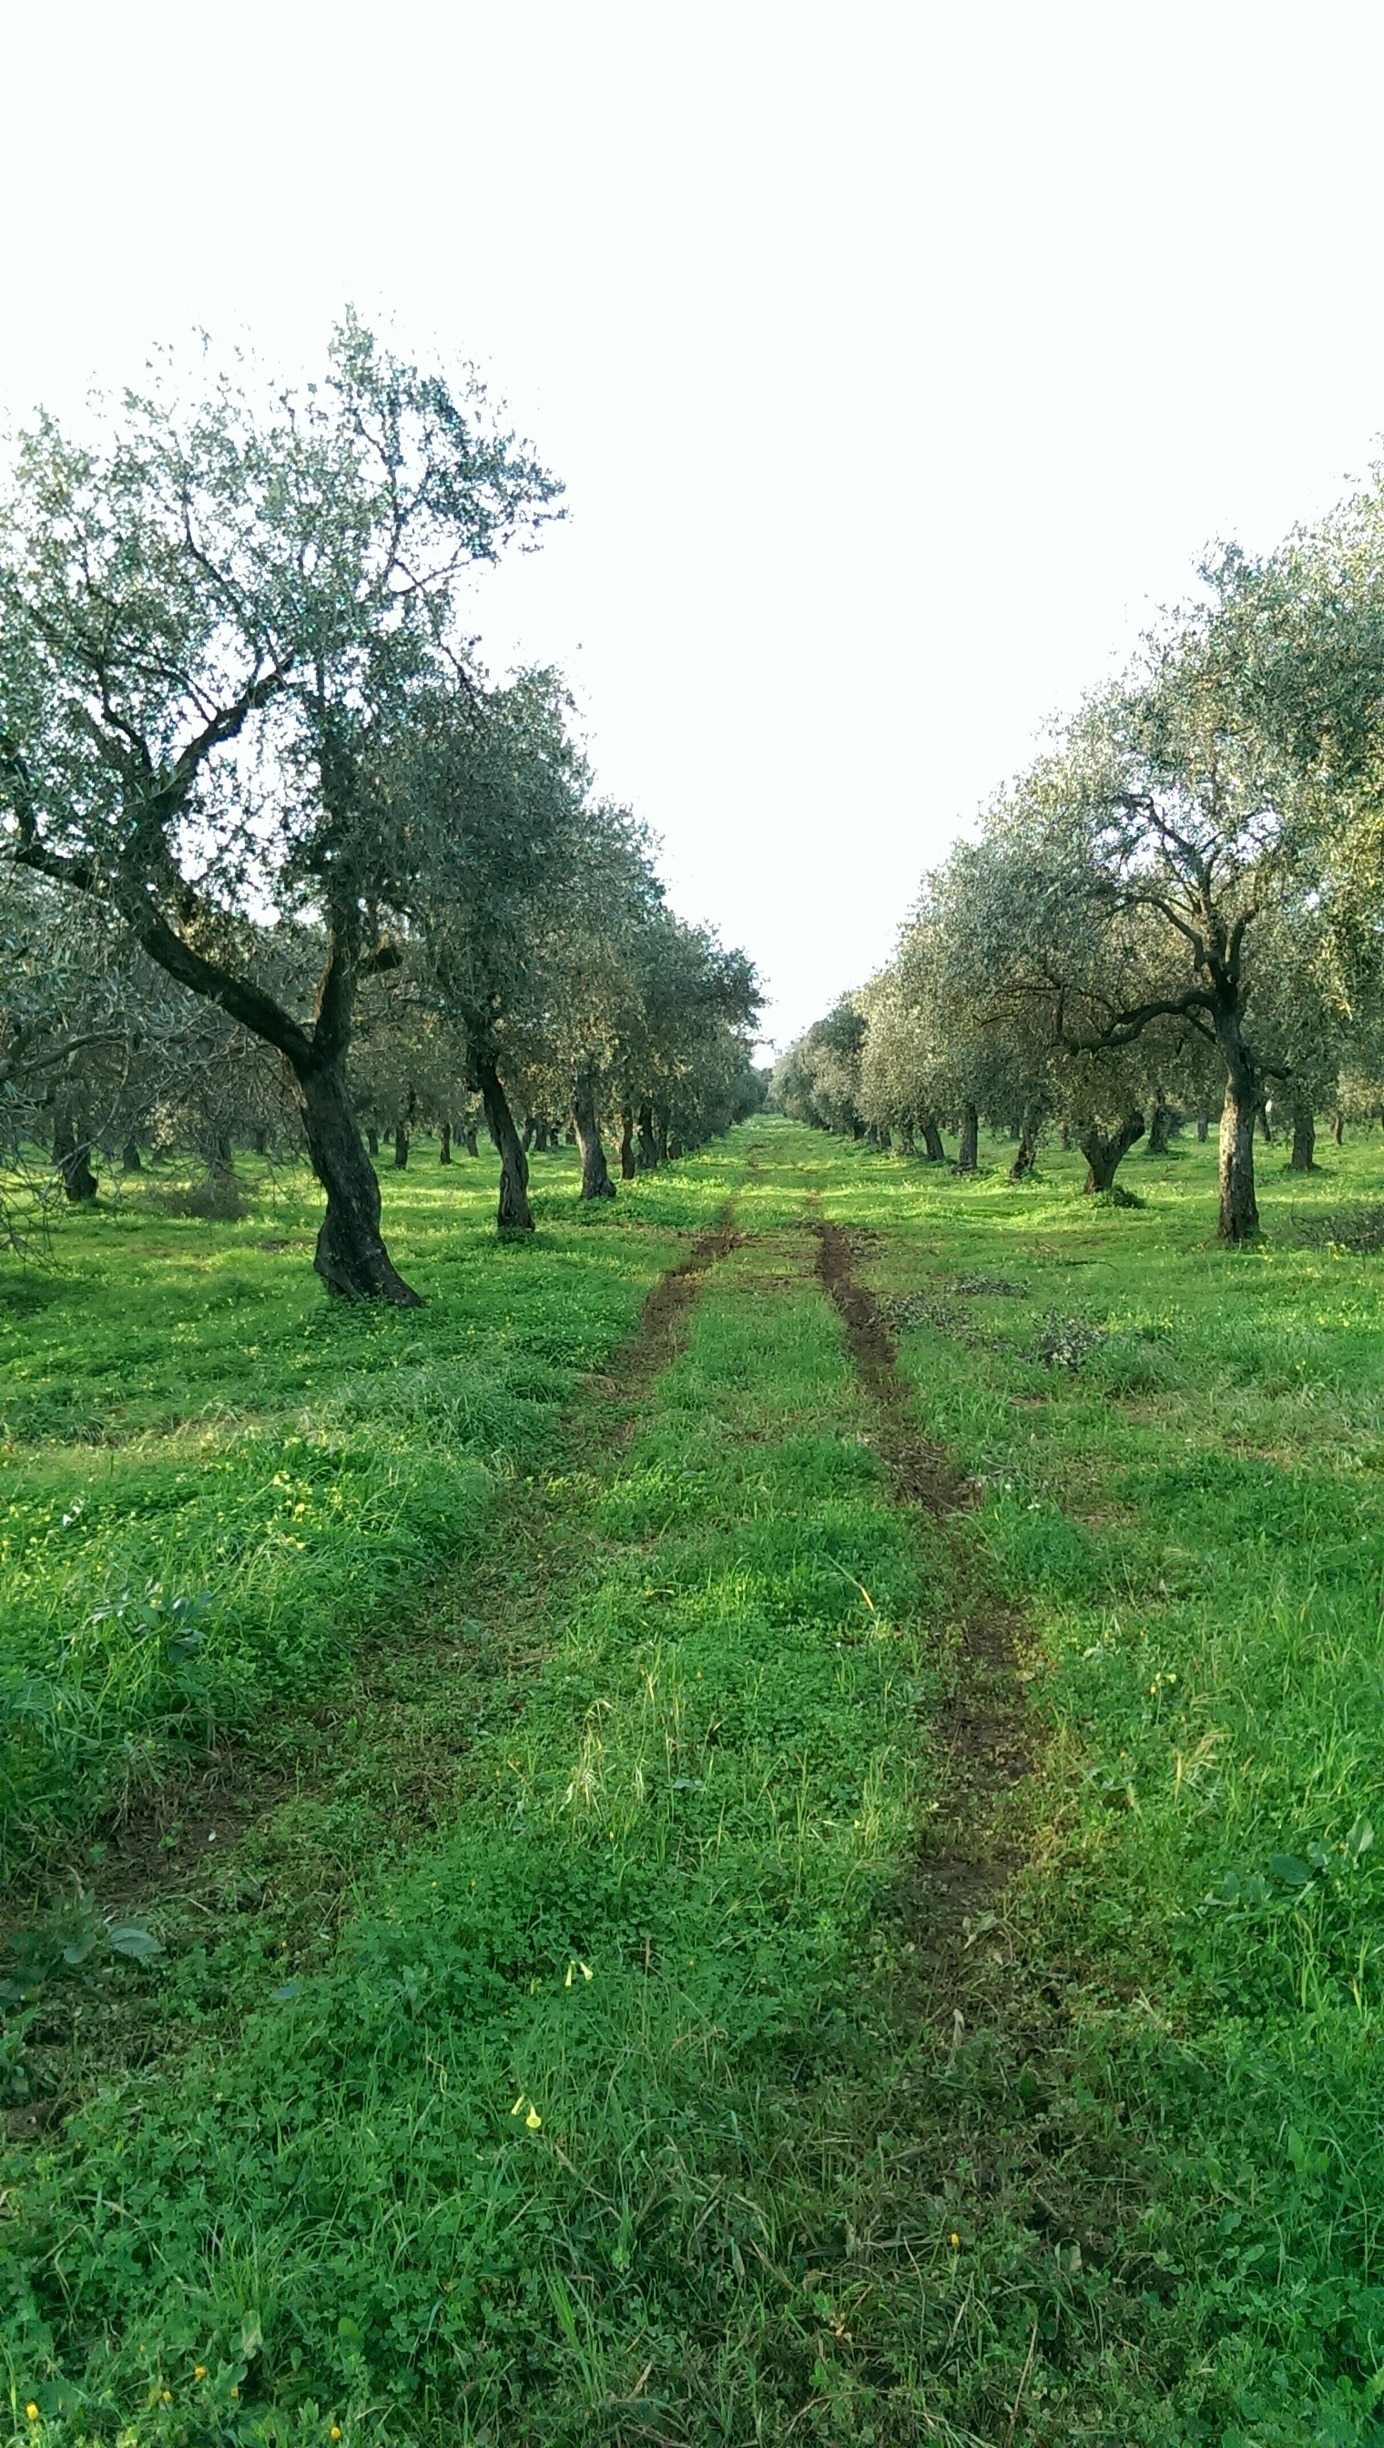 Beautiful walk through Alghero in Sardegna 
#Green 